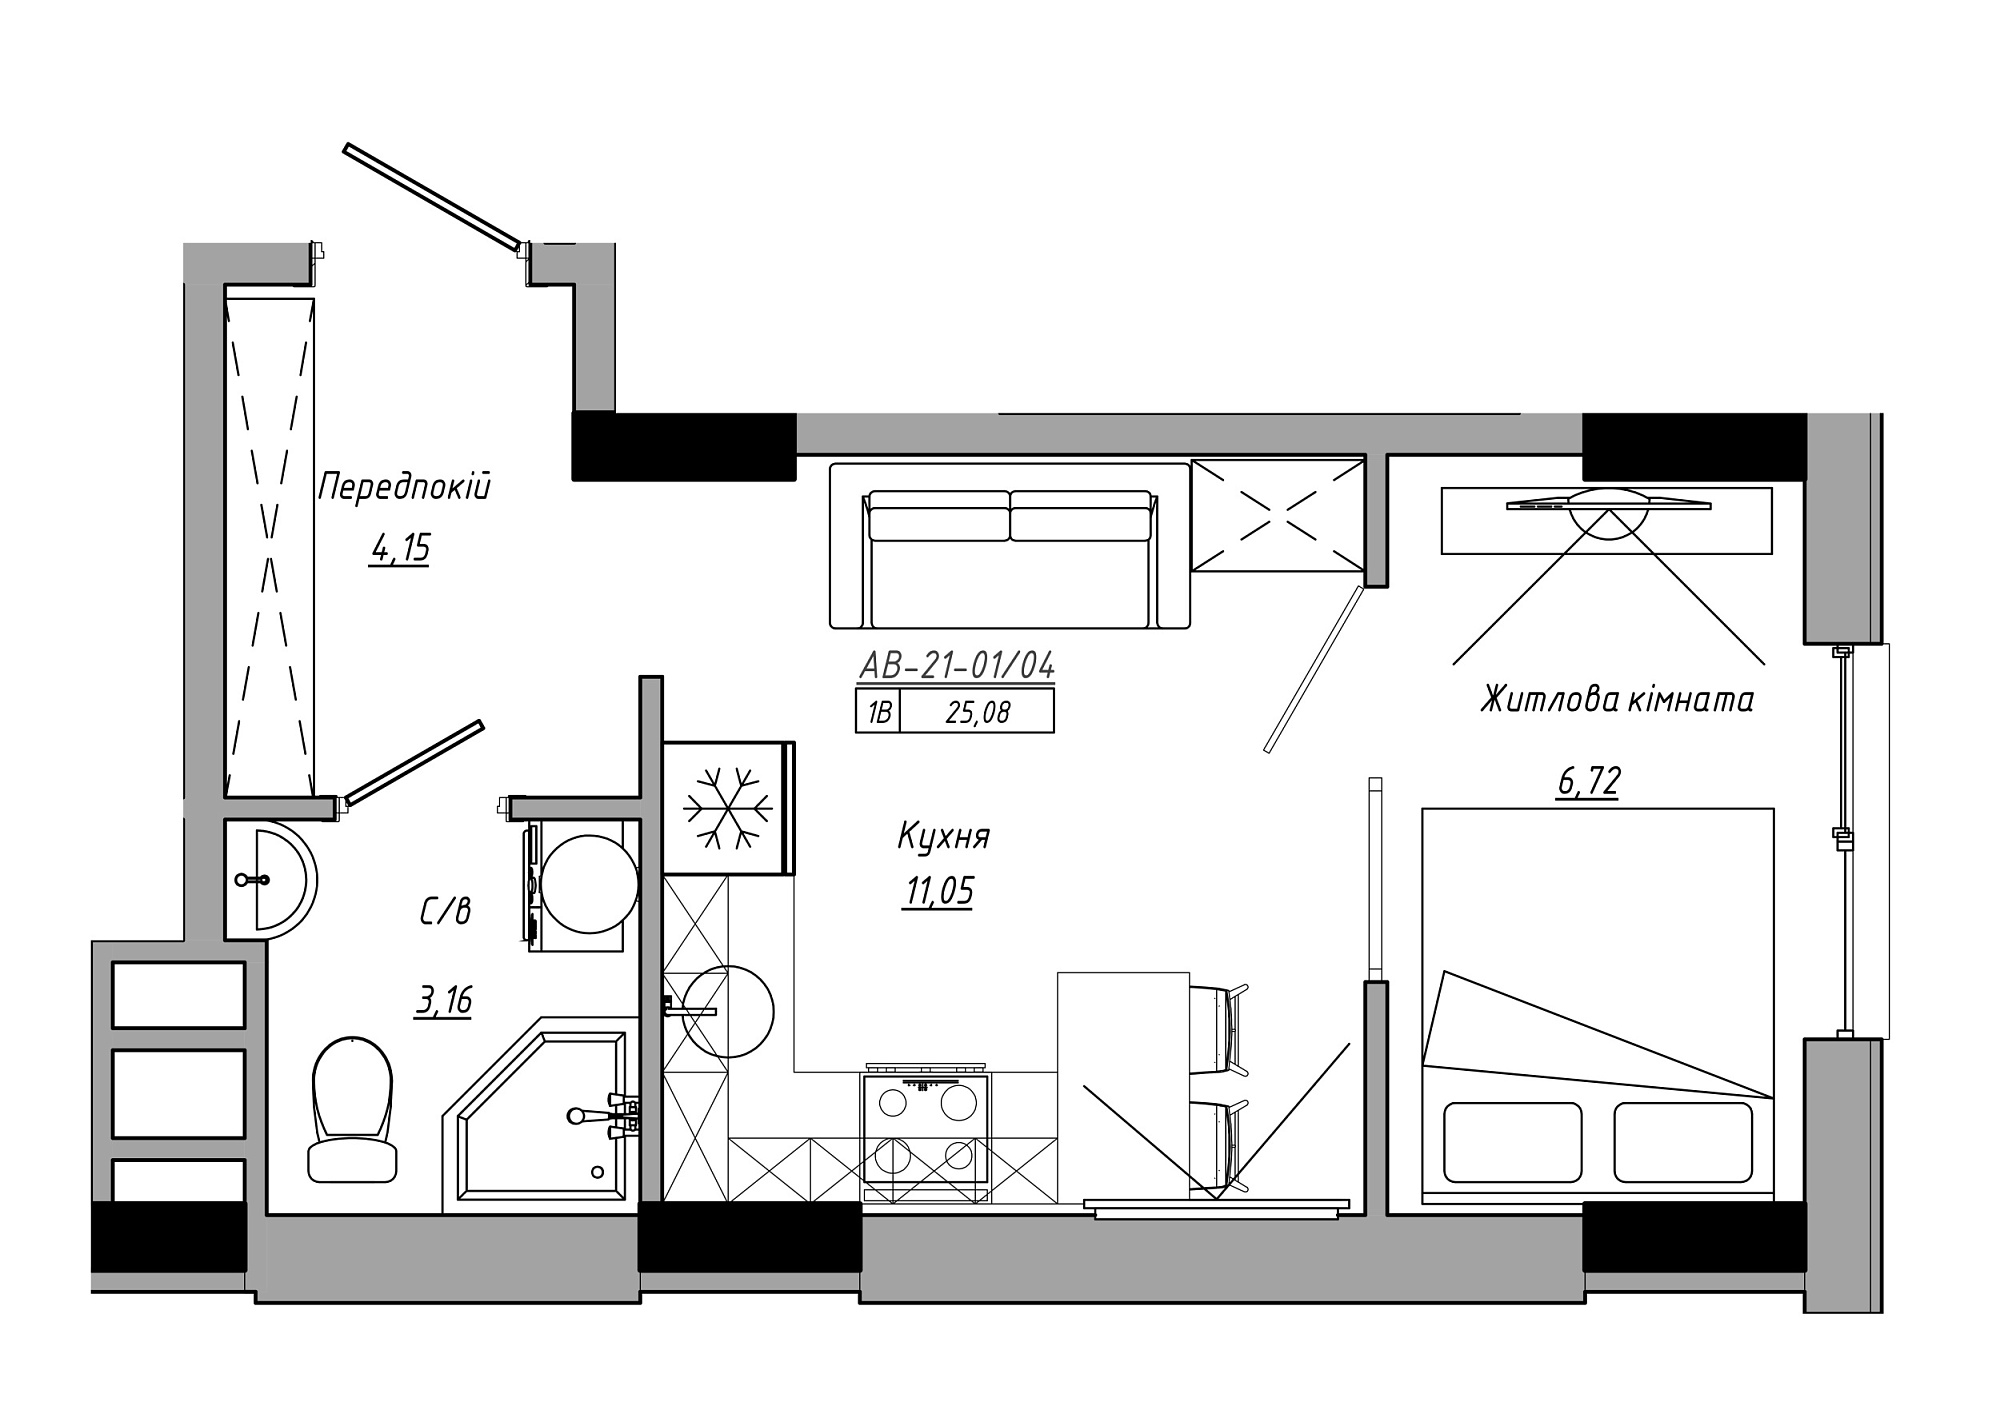 Планування 1-к квартира площею 25.08м2, AB-21-01/00004.